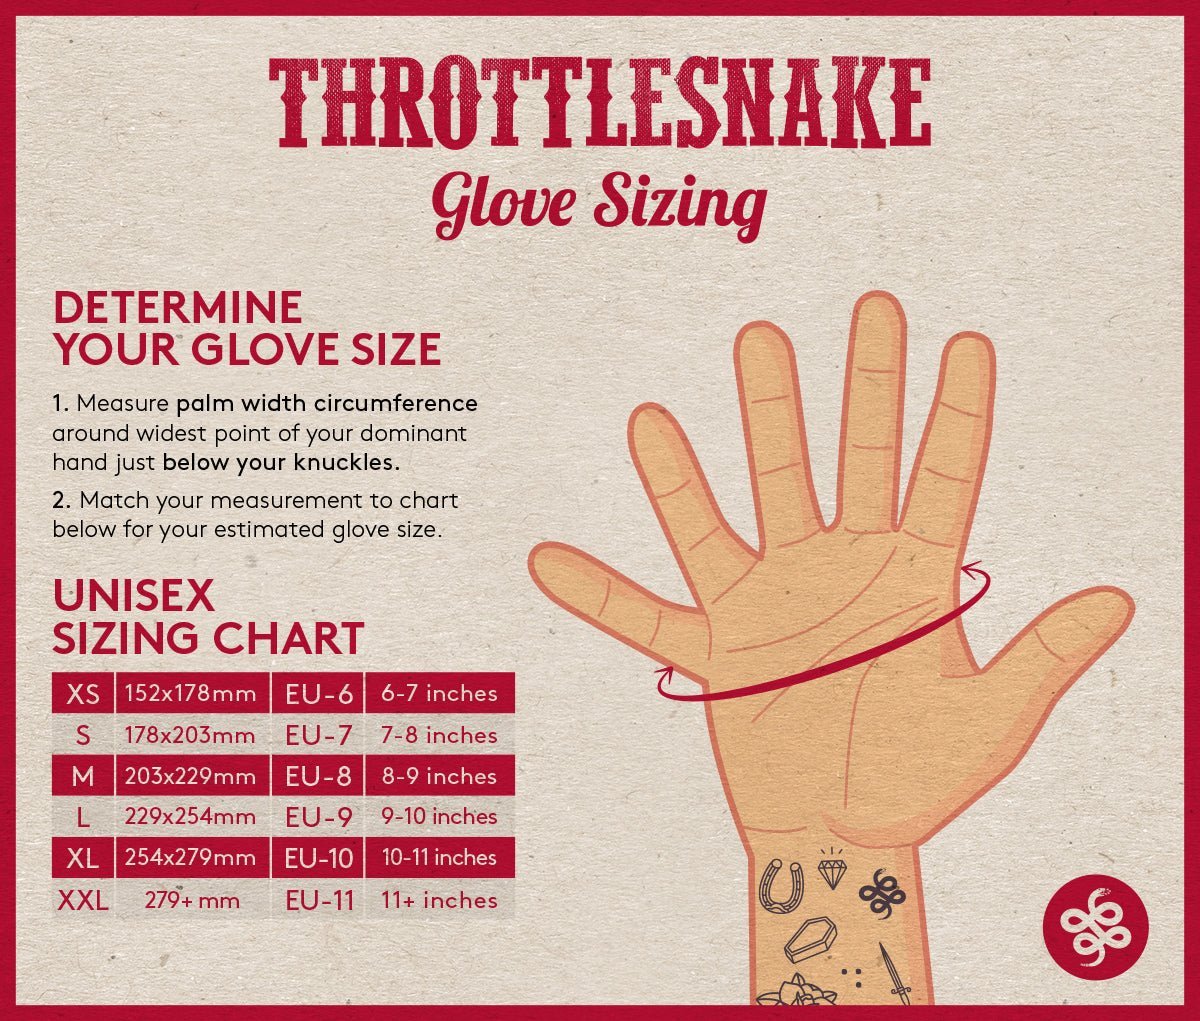 Custom Glove Trotter † Waxed Gloves - THROTTLESNAKE